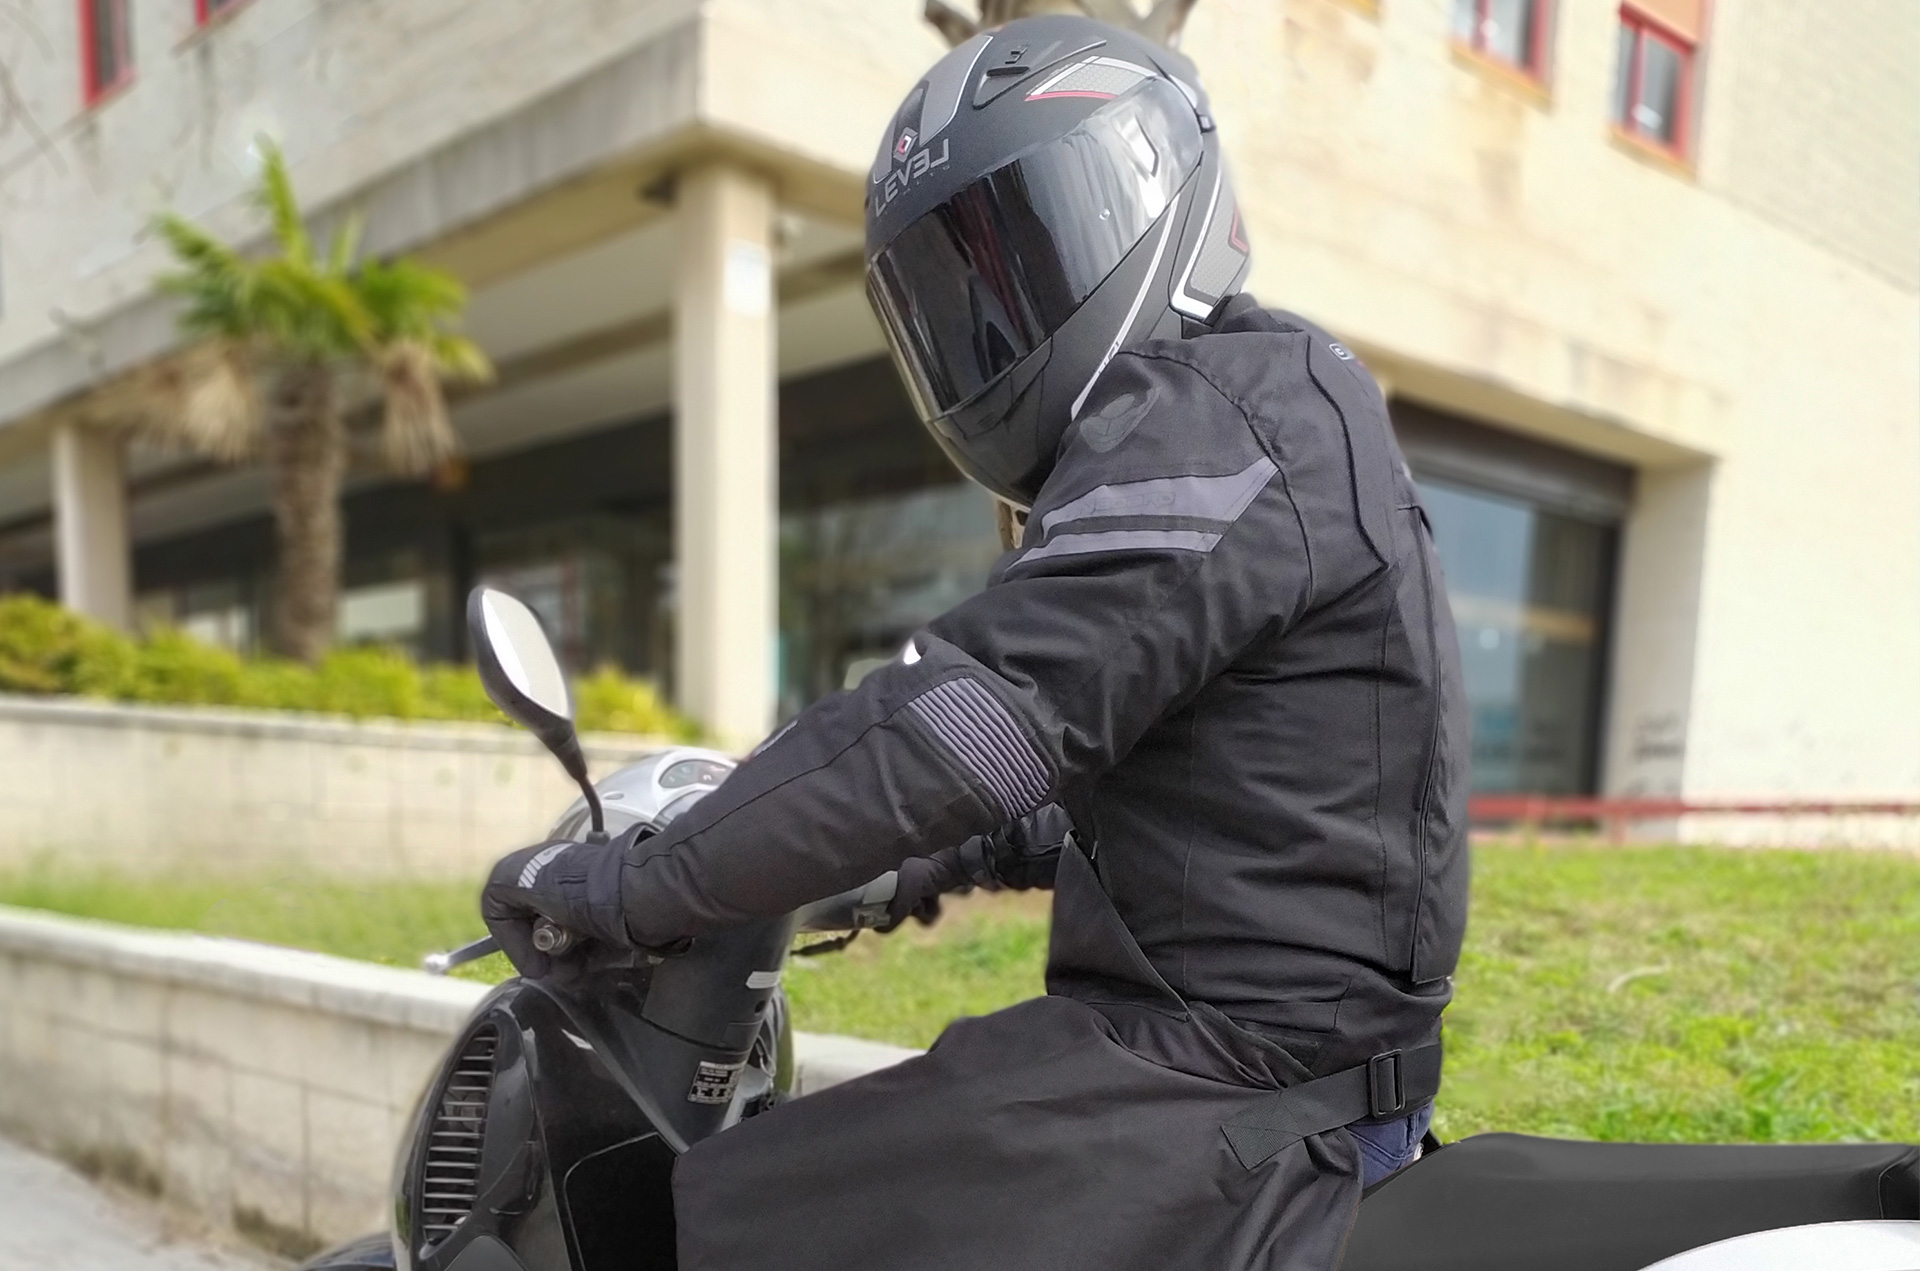 Chaqueta moto ON BOARD Addict Evo negra 4 estaciones